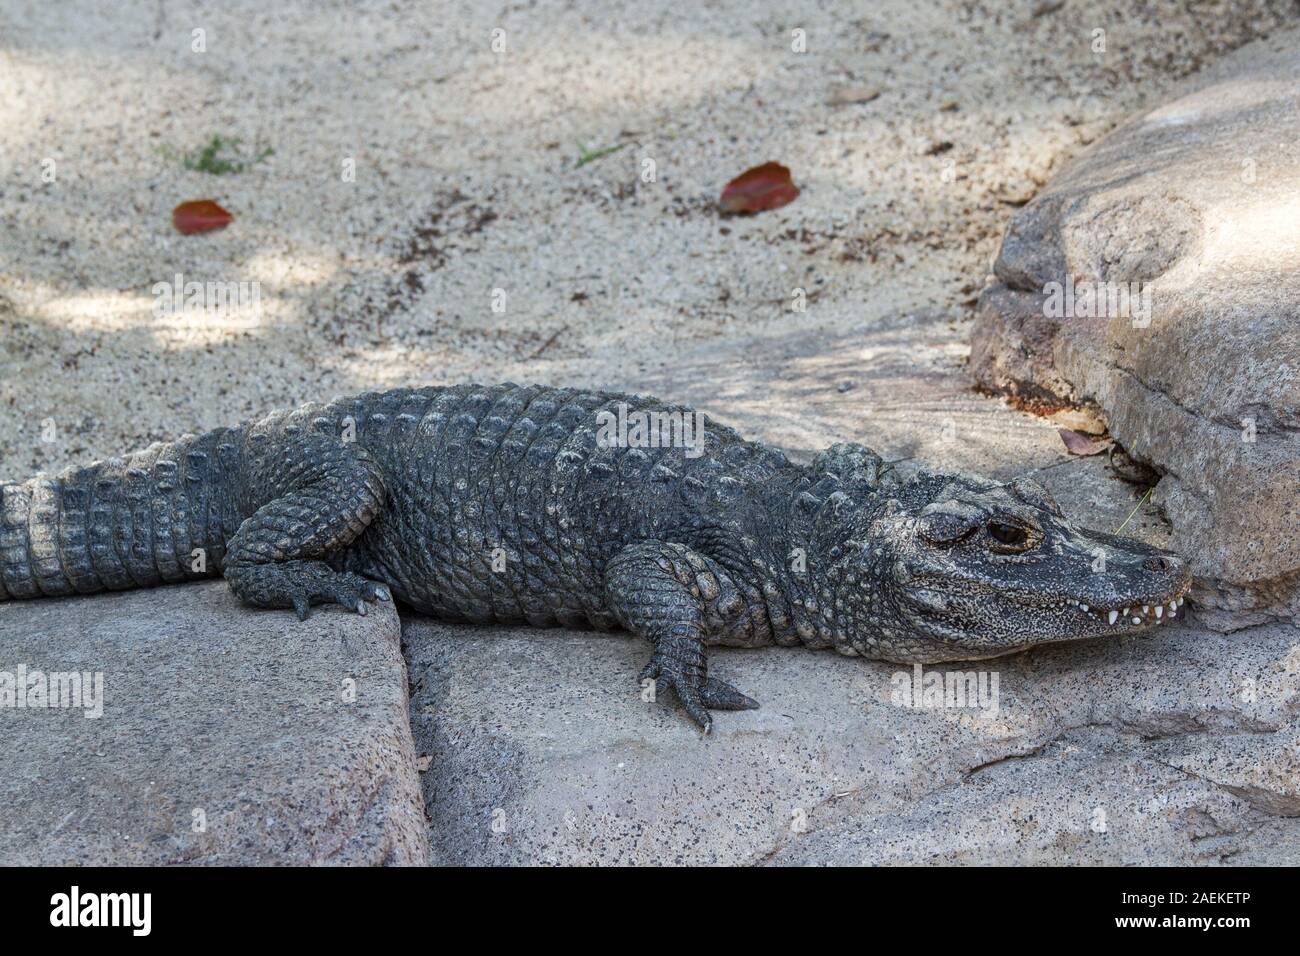 Captive Chinese Alligator Stock Photo